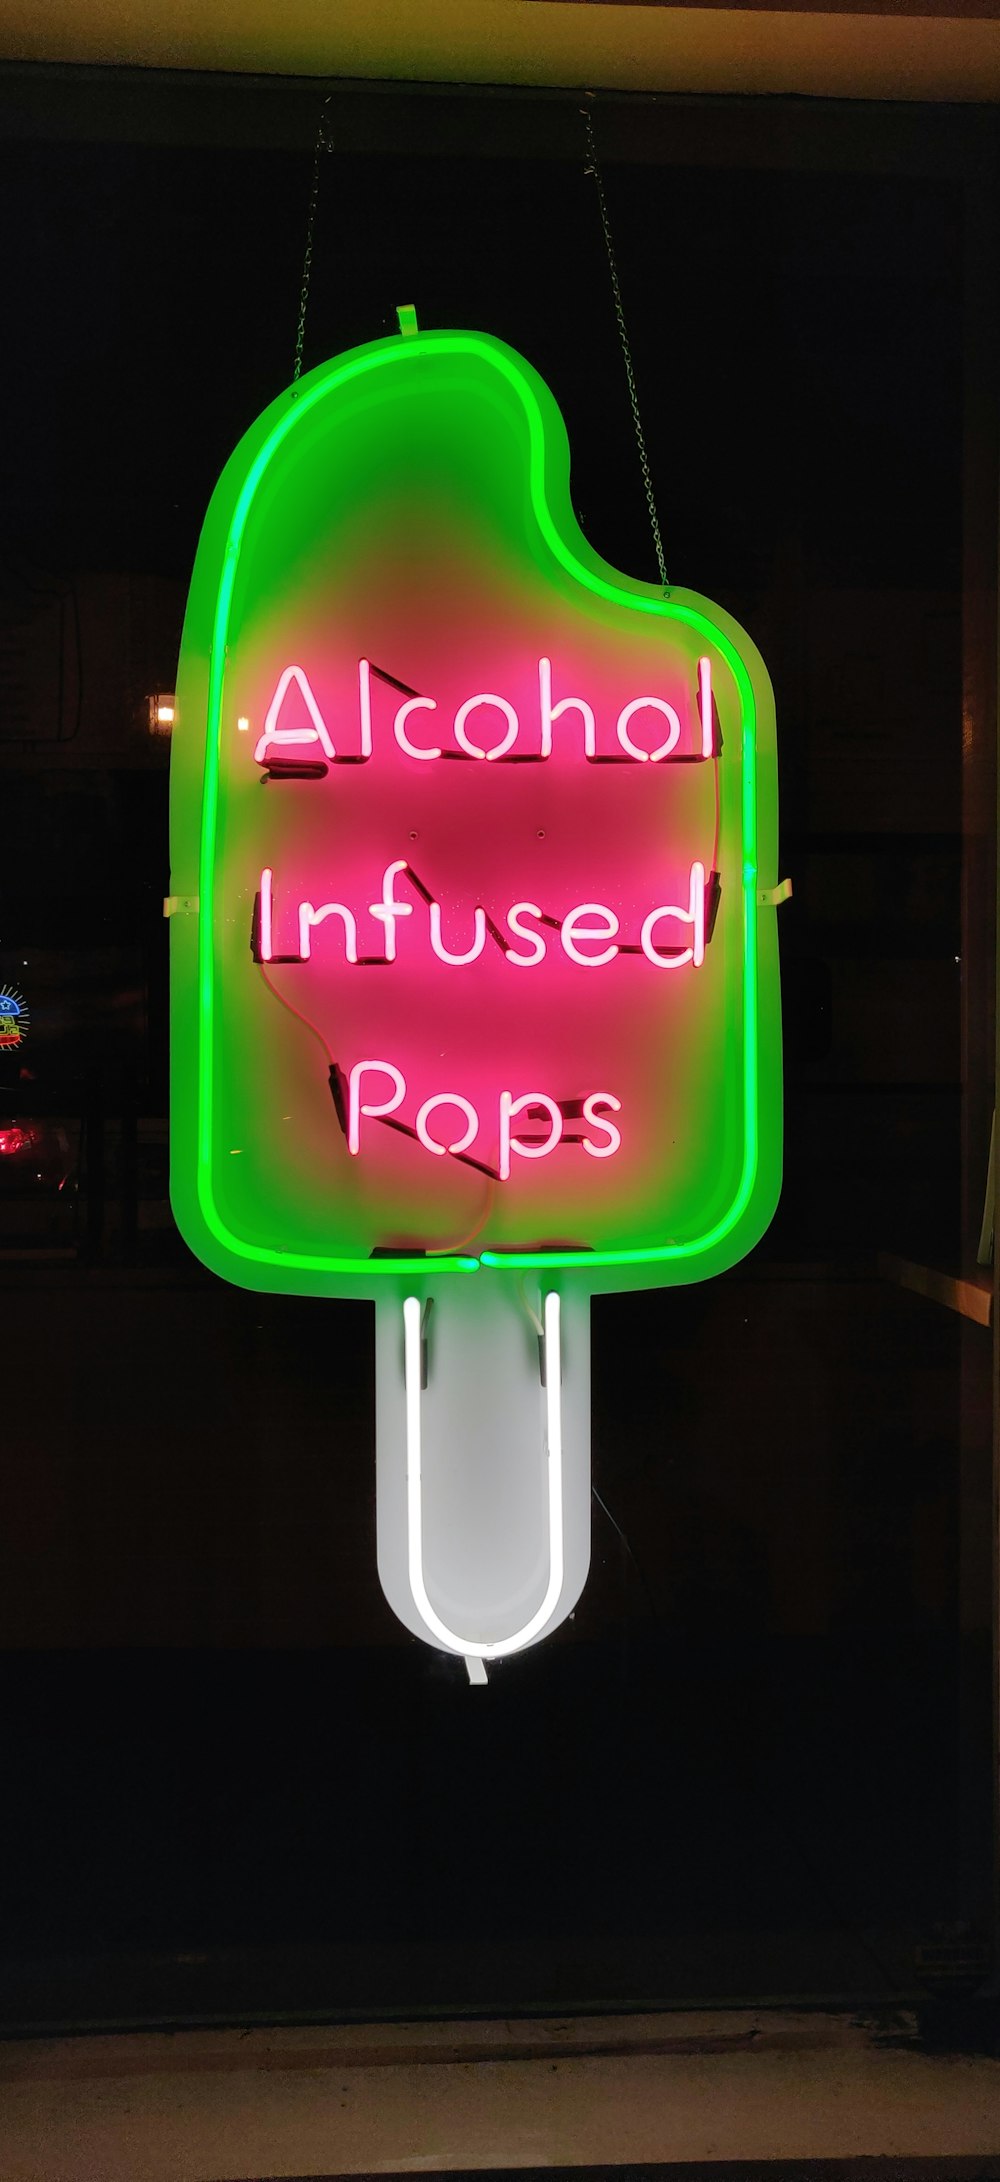 Panneaux au néon Pops infusés d’alcool rose